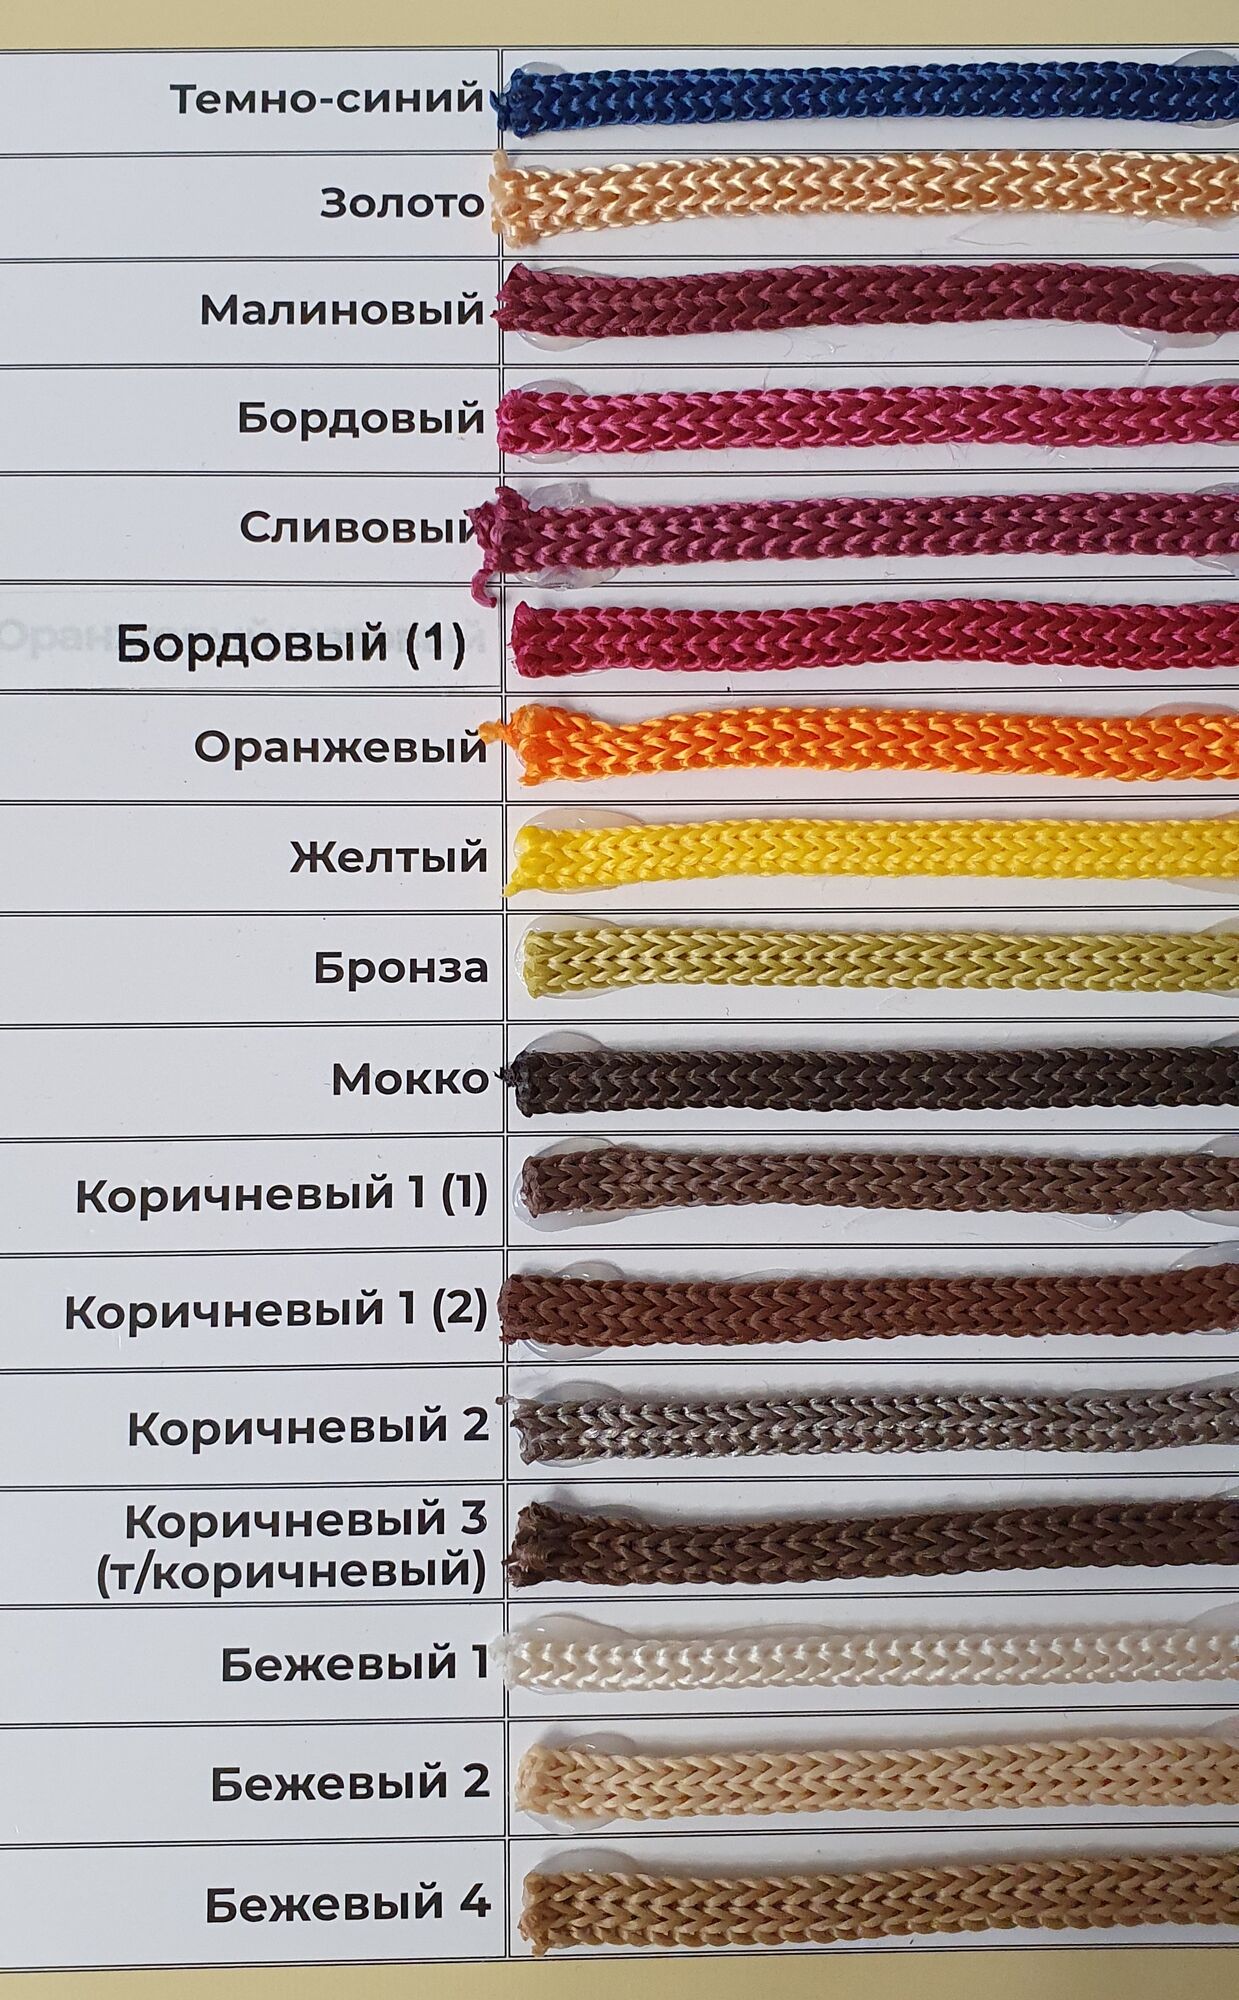 карта цветов полипропиленового шнура 7